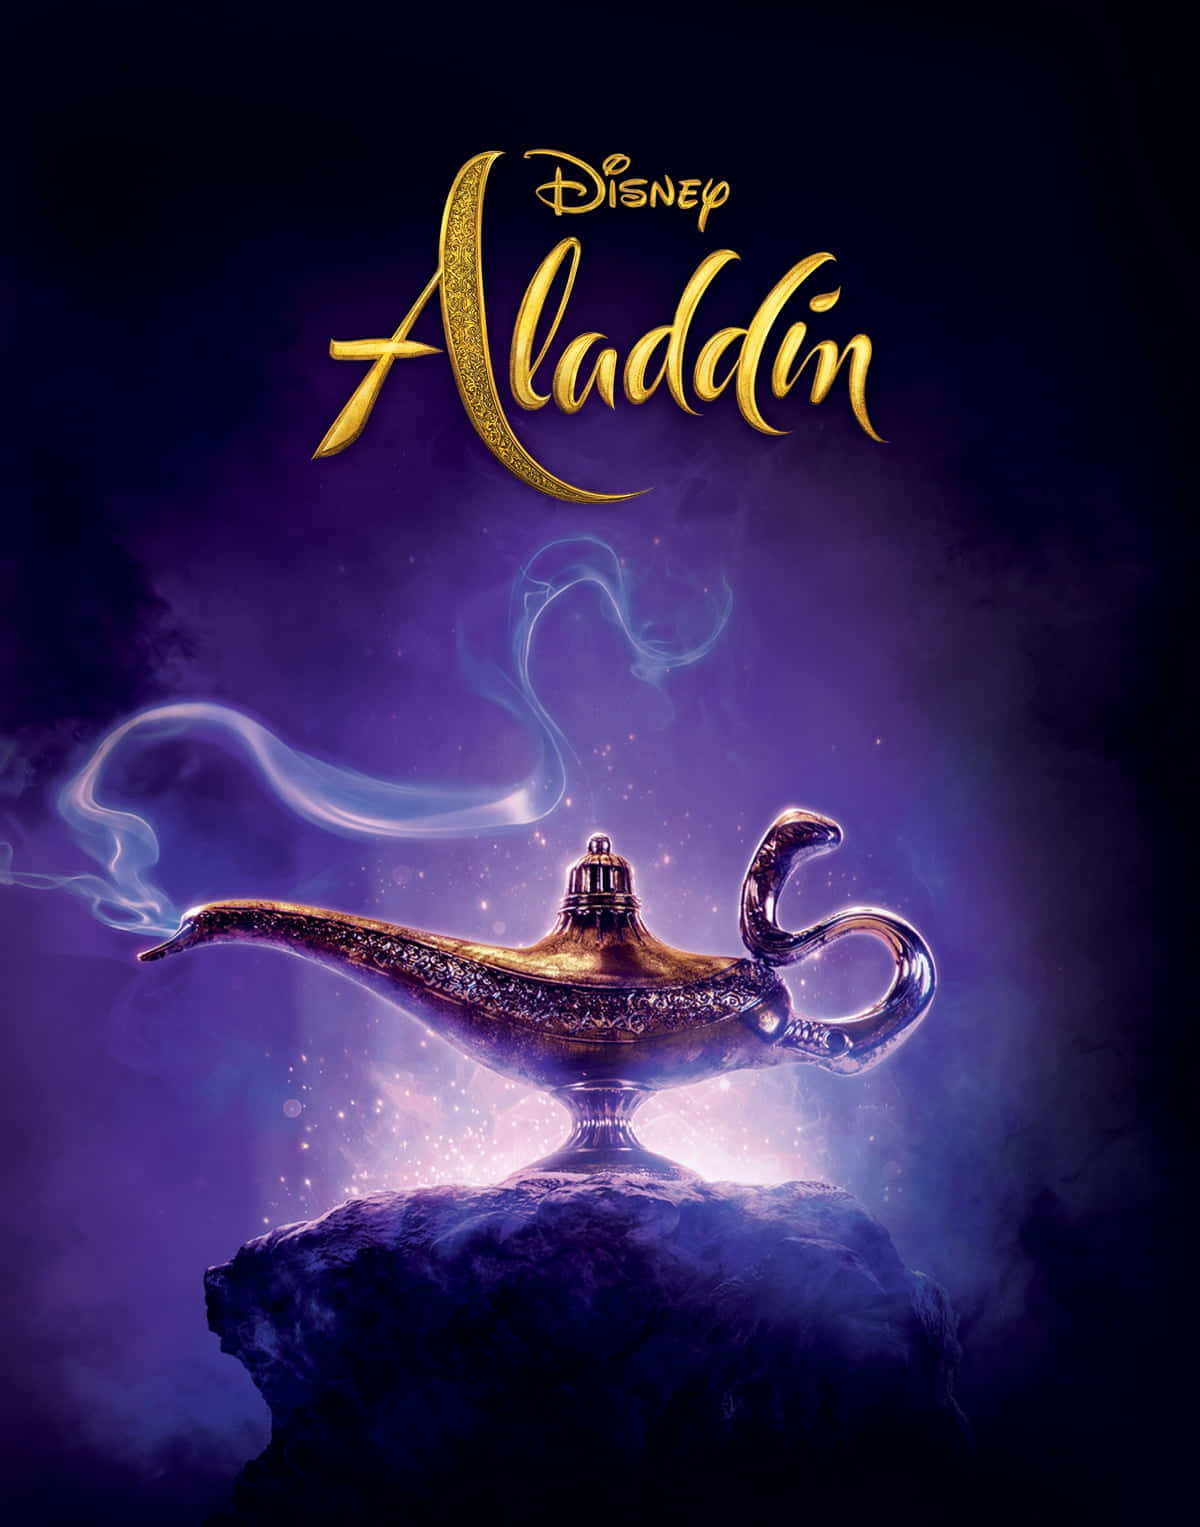 Upptäckkraften Hos Den Magiska Lampan När Aladdin Framkallar Anden!